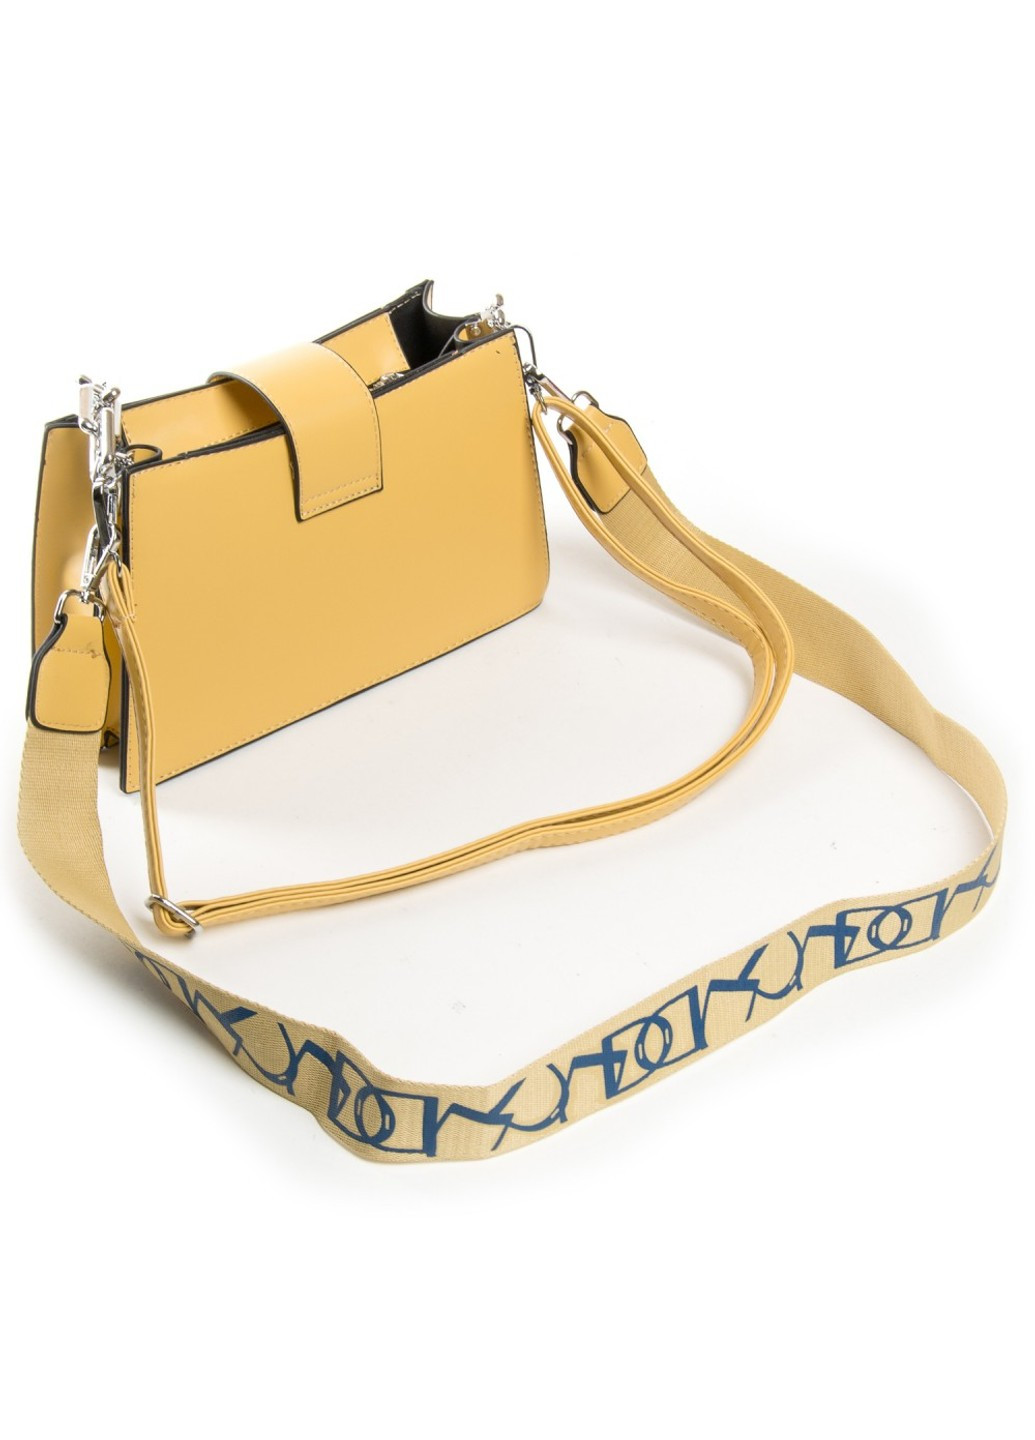 Женская сумочка из кожезаменителя 04-02 8865 yellow Fashion (261486782)